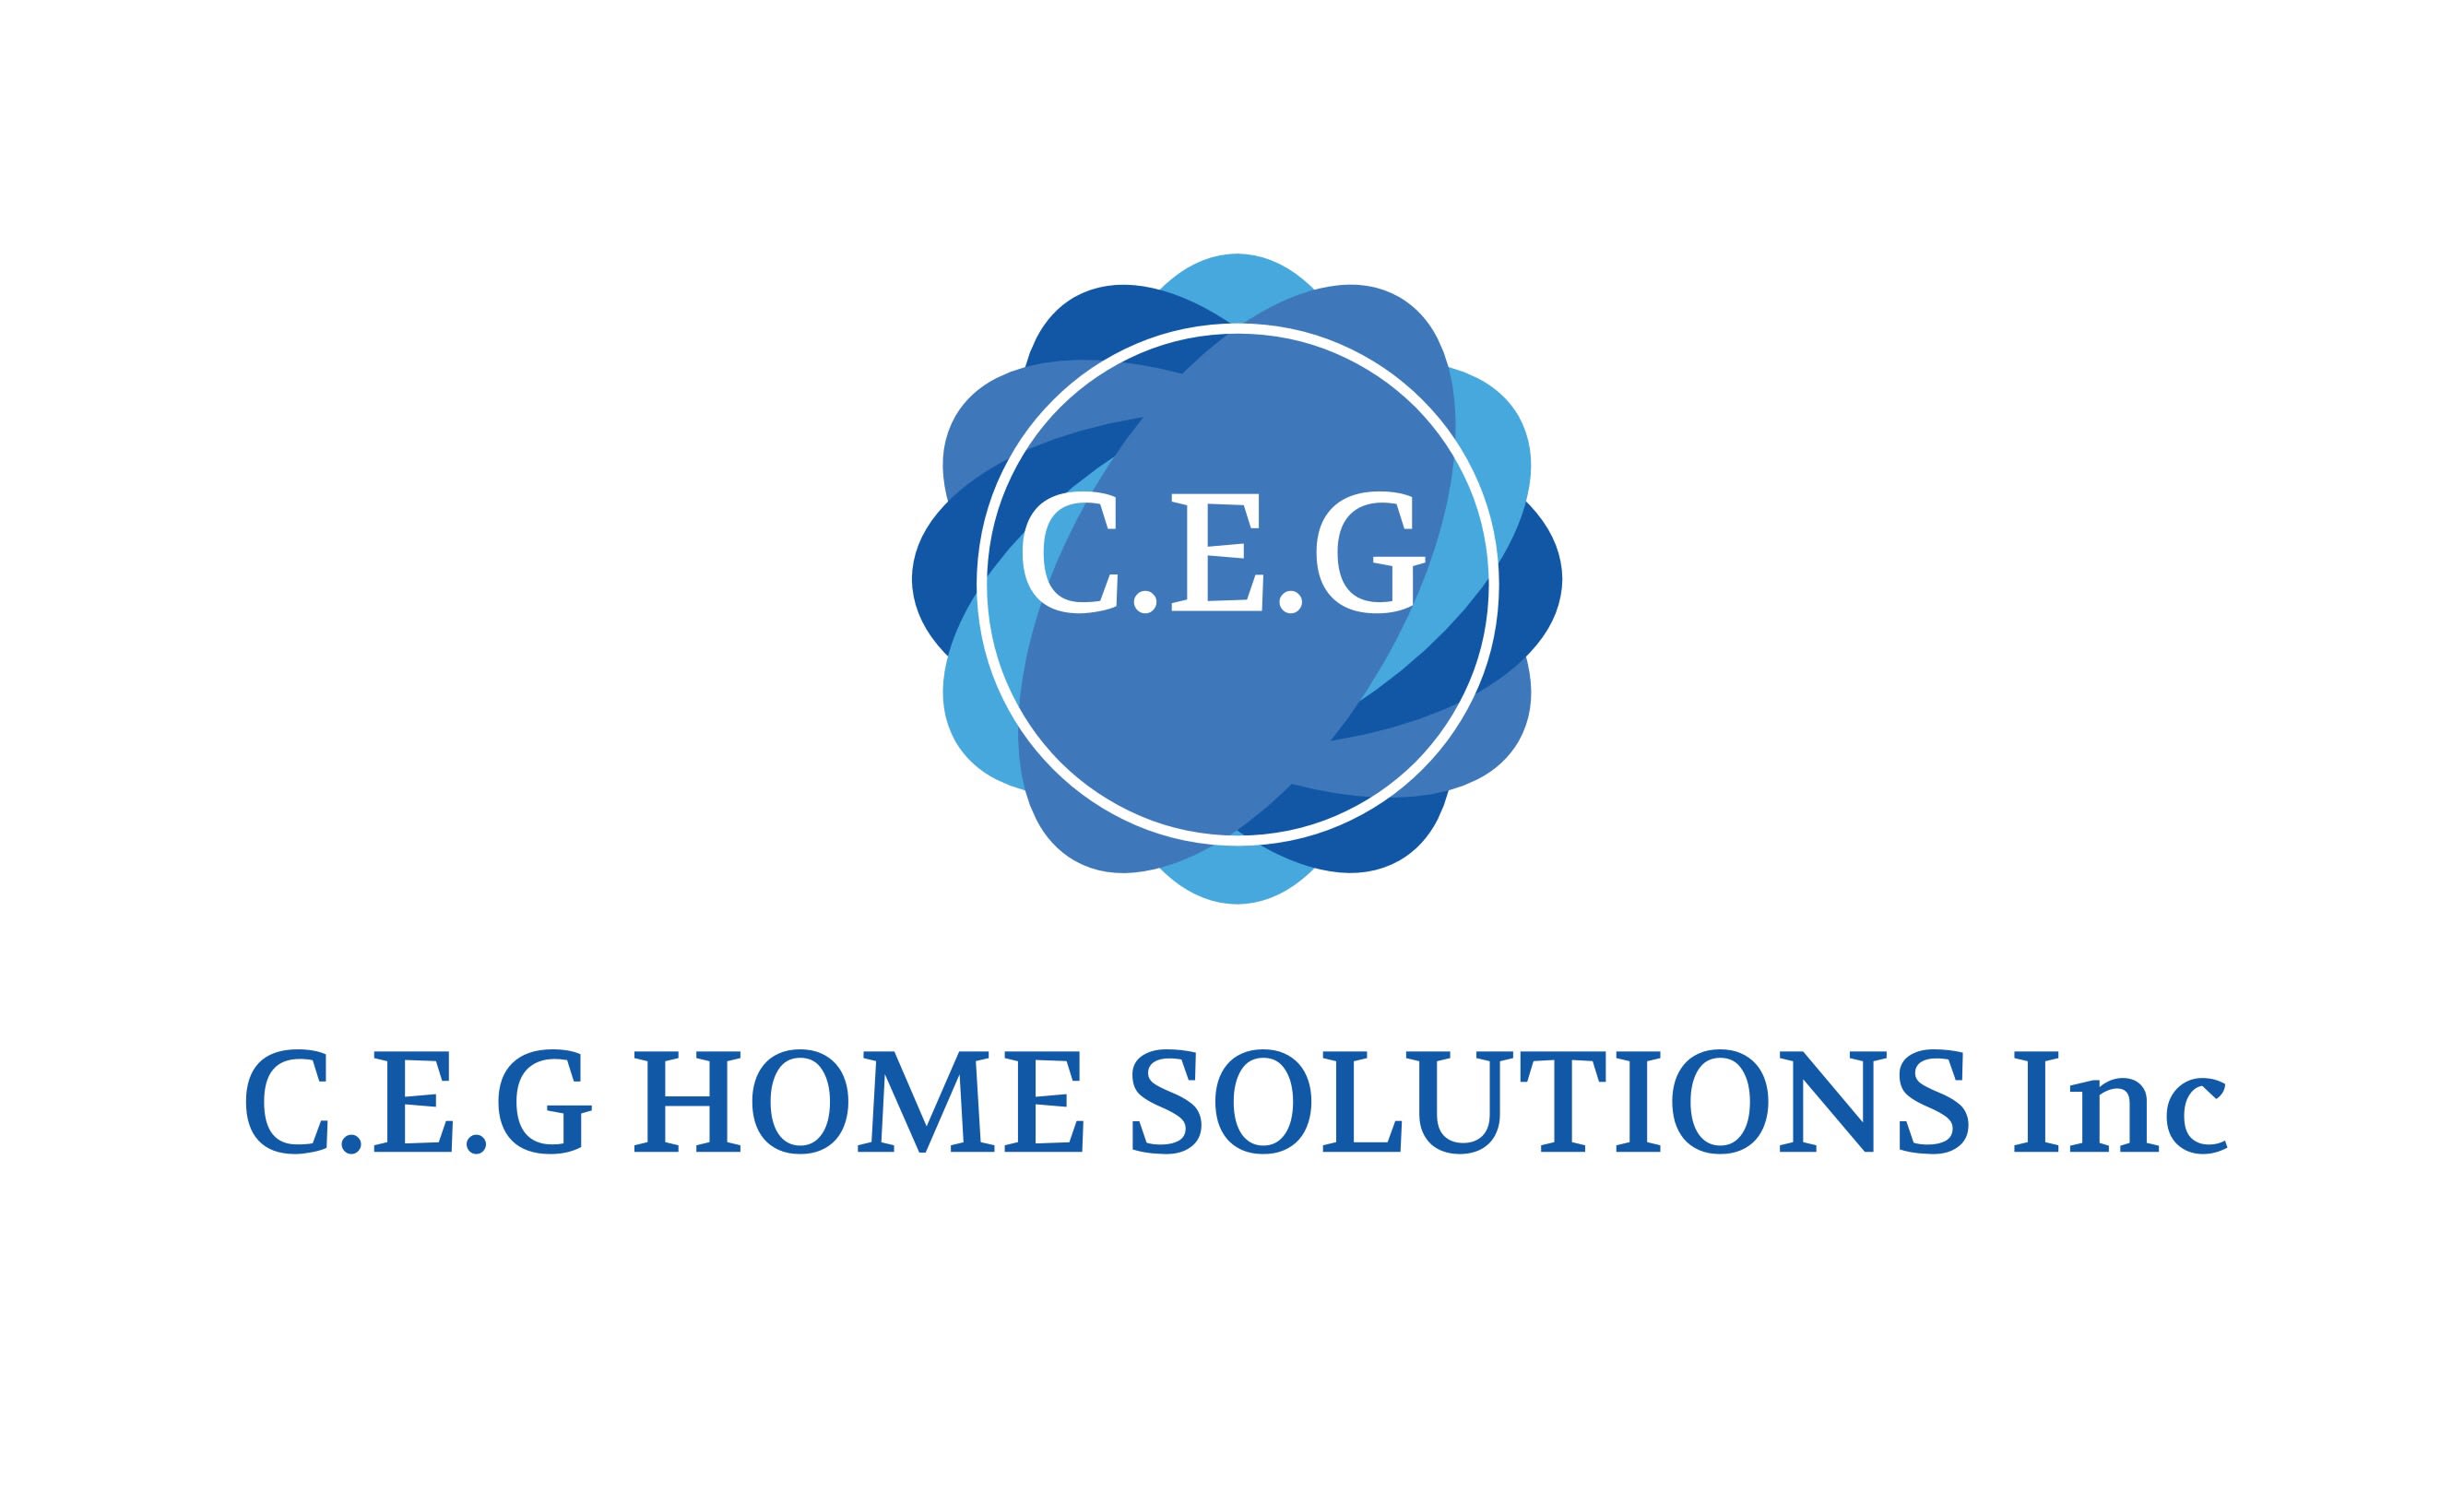 C.E.G Home Solutions Inc